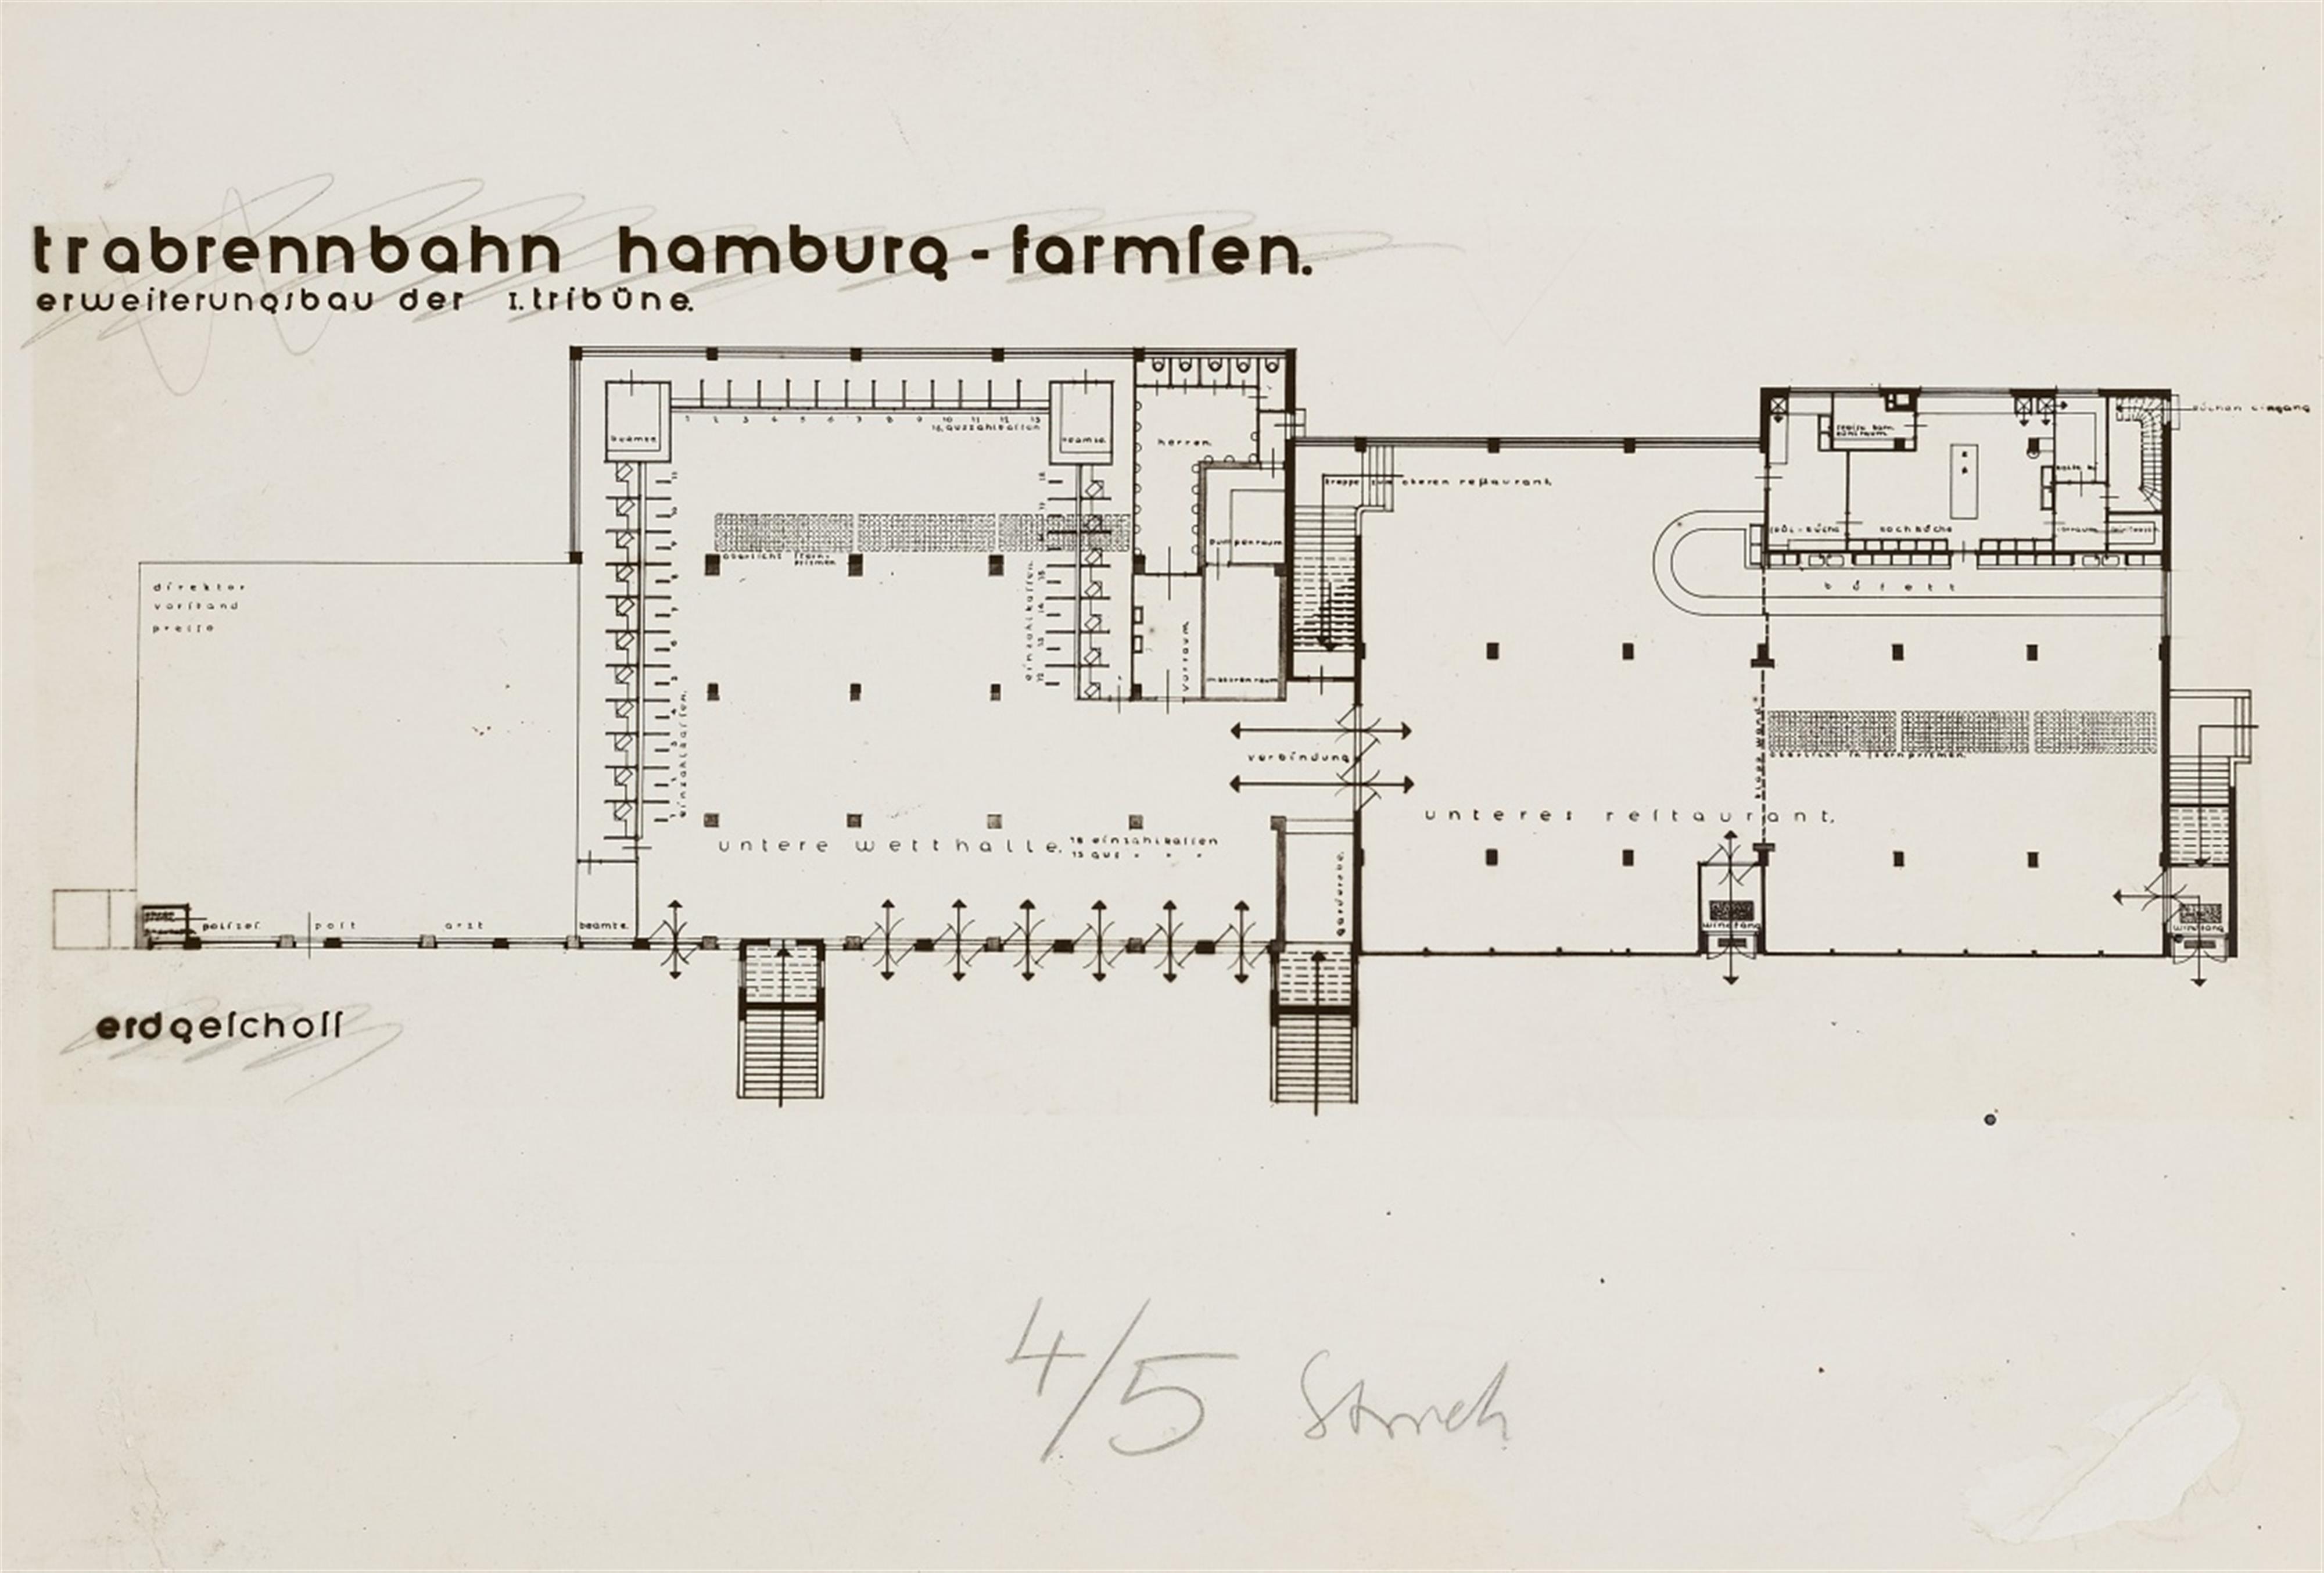 Ernst Scheel - Trabrennbahn Farmsen, Hamburg - image-15